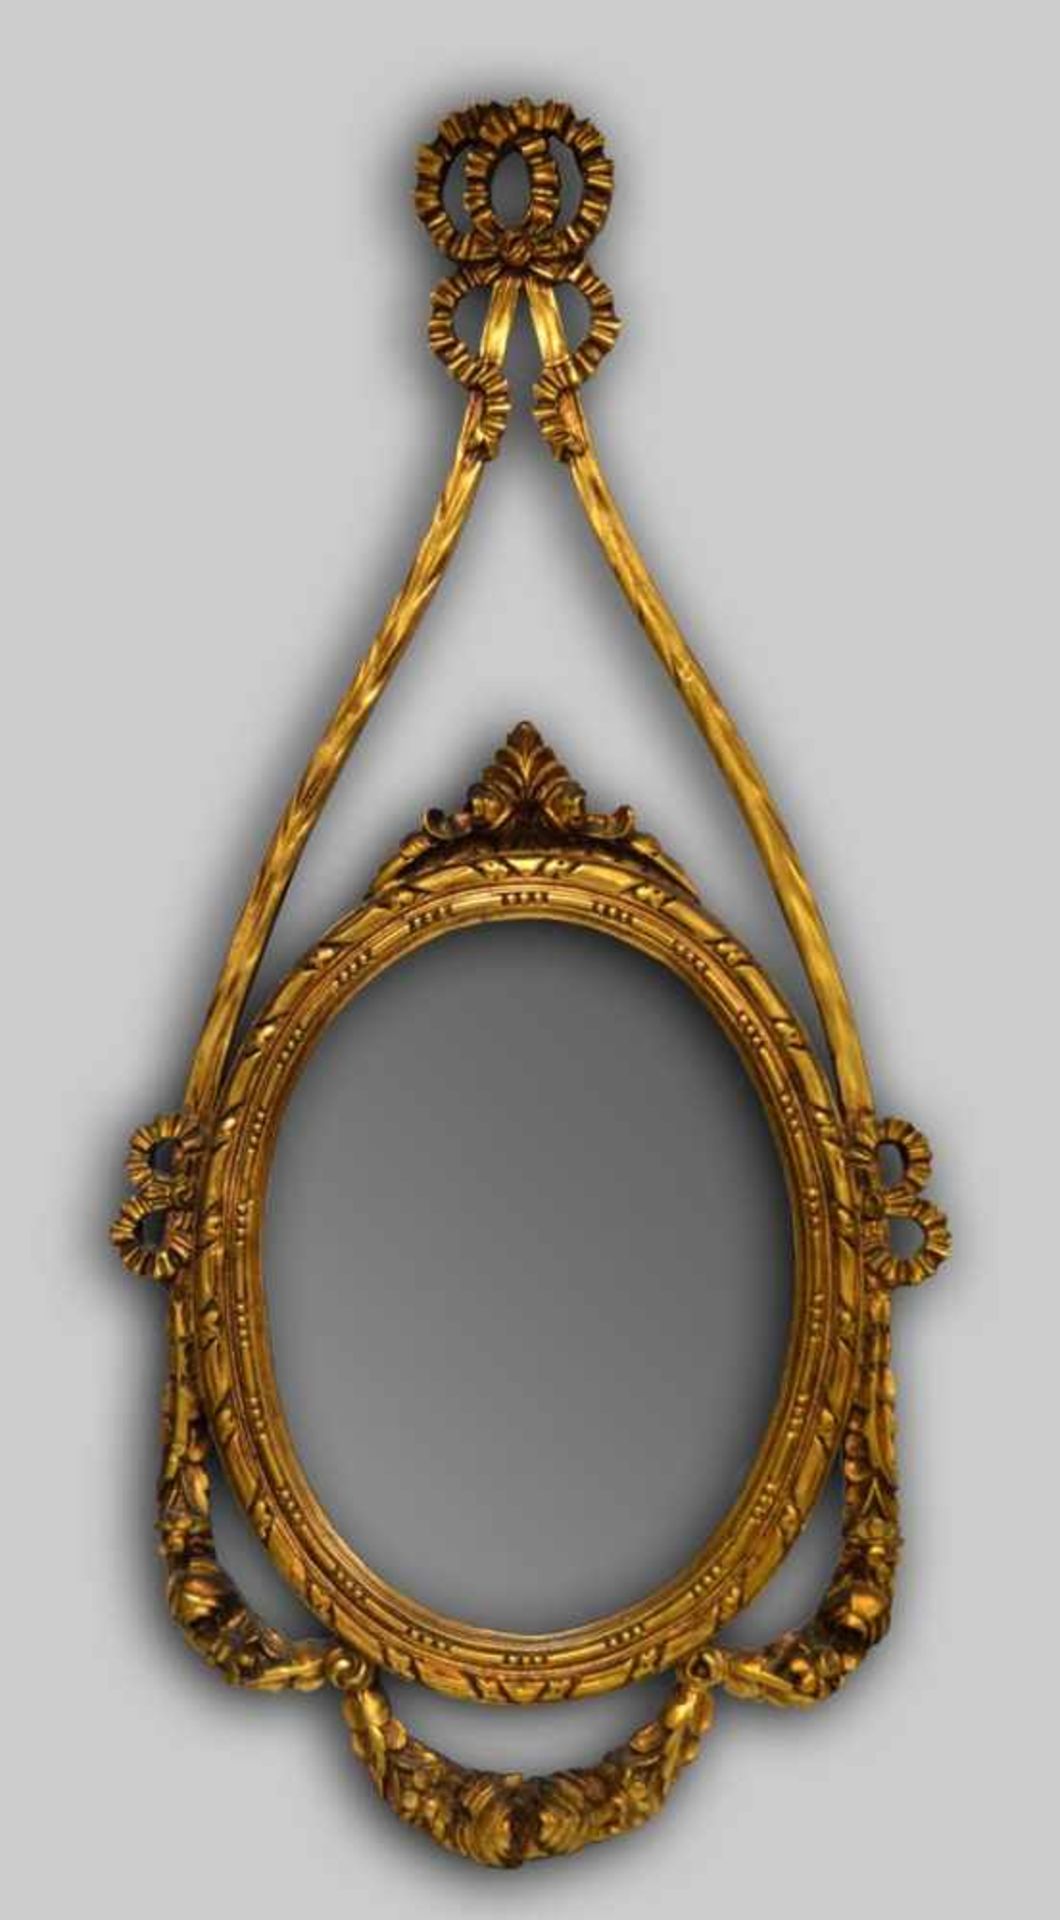 Spiegel oval, Pressholz, Schleifenbekrönung, gold gefasst, H 116 cm, B 55 cm